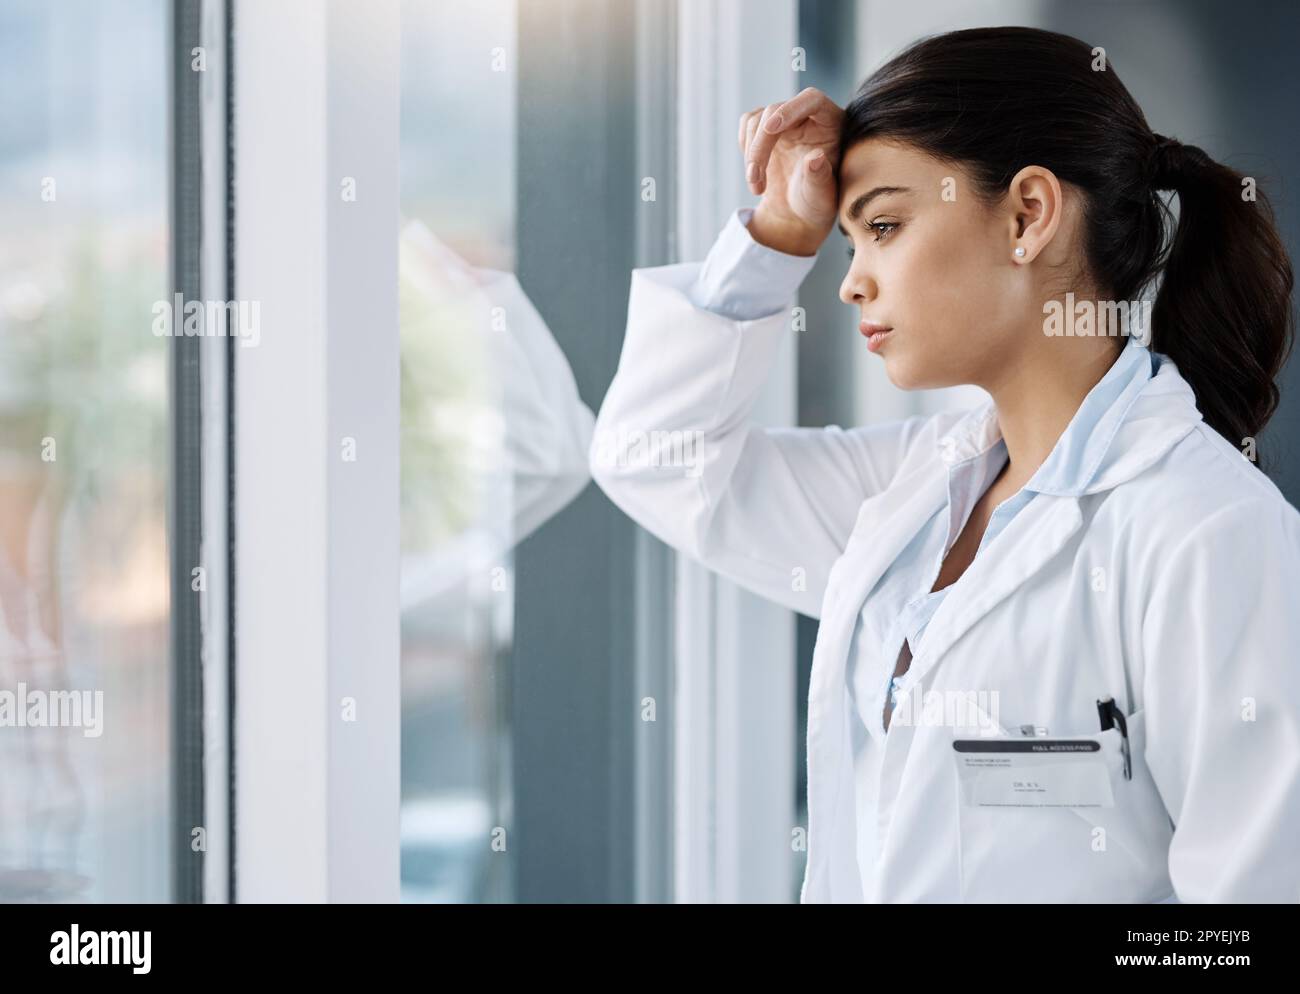 Das Problem des ärztlichen Burnouts wird immer häufiger. Eine junge Ärztin sieht gestresst aus, während sie in einem Krankenhaus am Fenster steht. Stockfoto